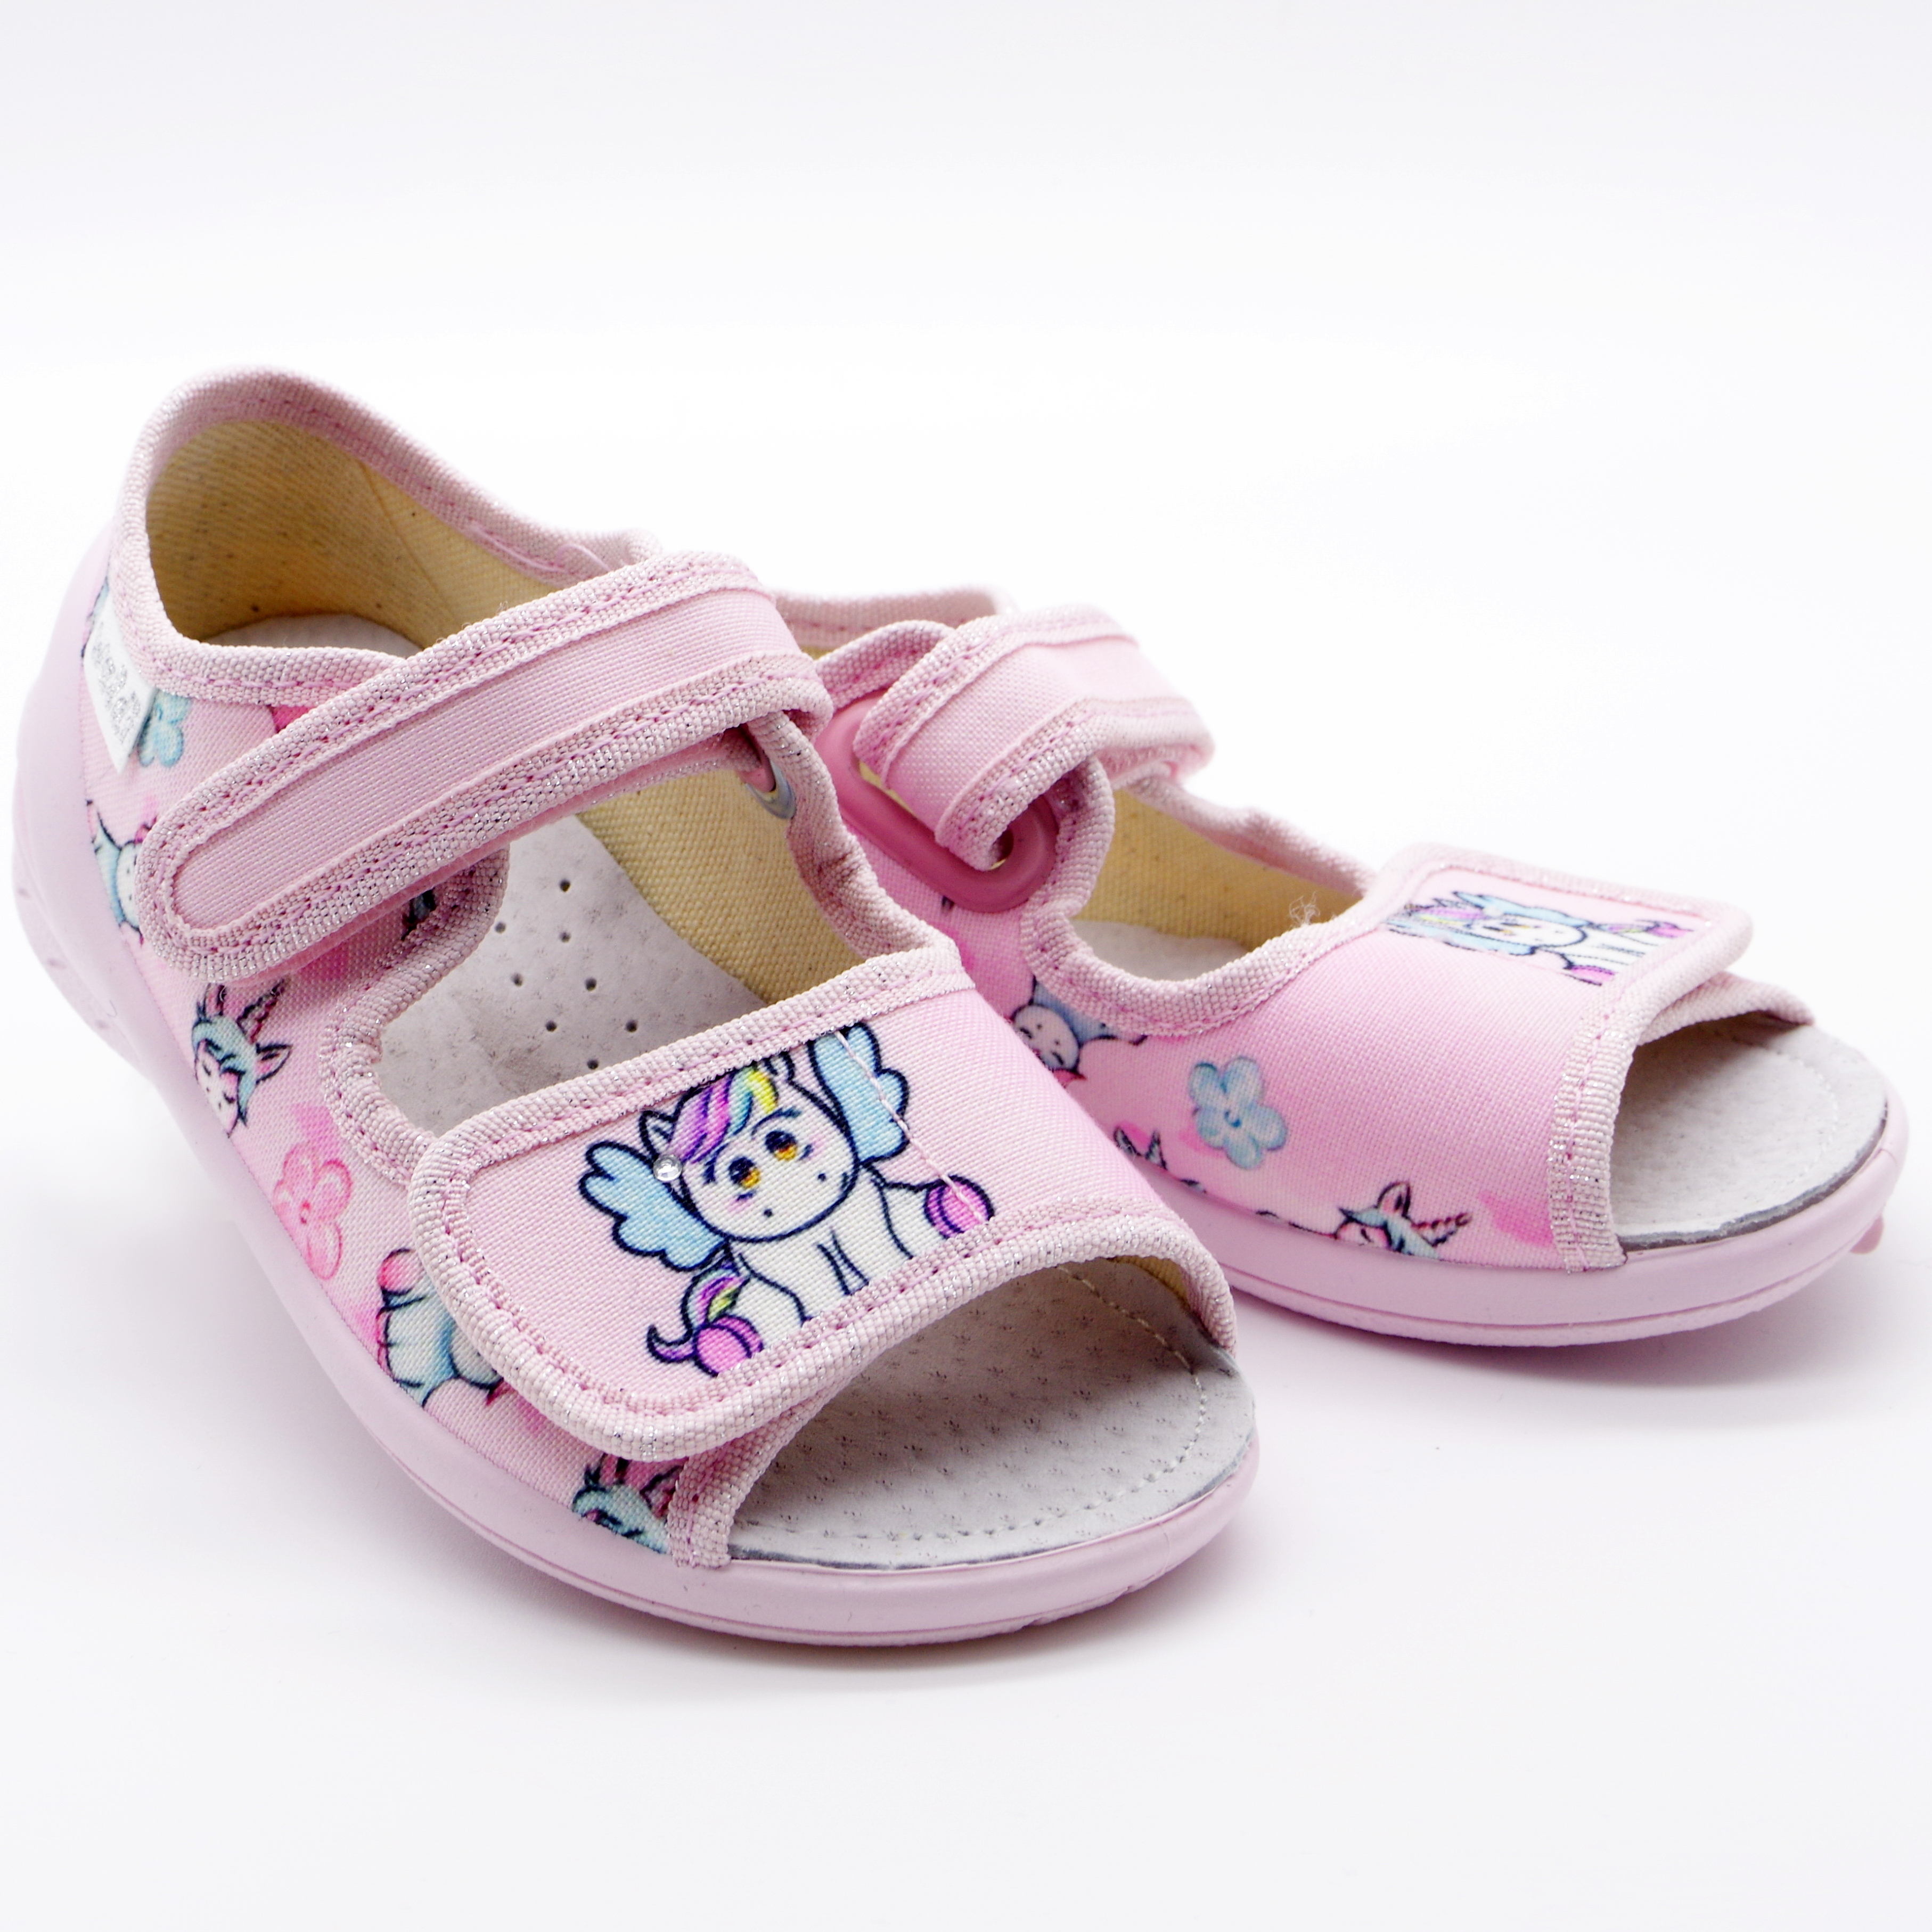 Текстильная обувь для девочек Тапочки Ева Единорог (2180) цвет Микс 23-30 размеры – Sole Kids. Фото 3